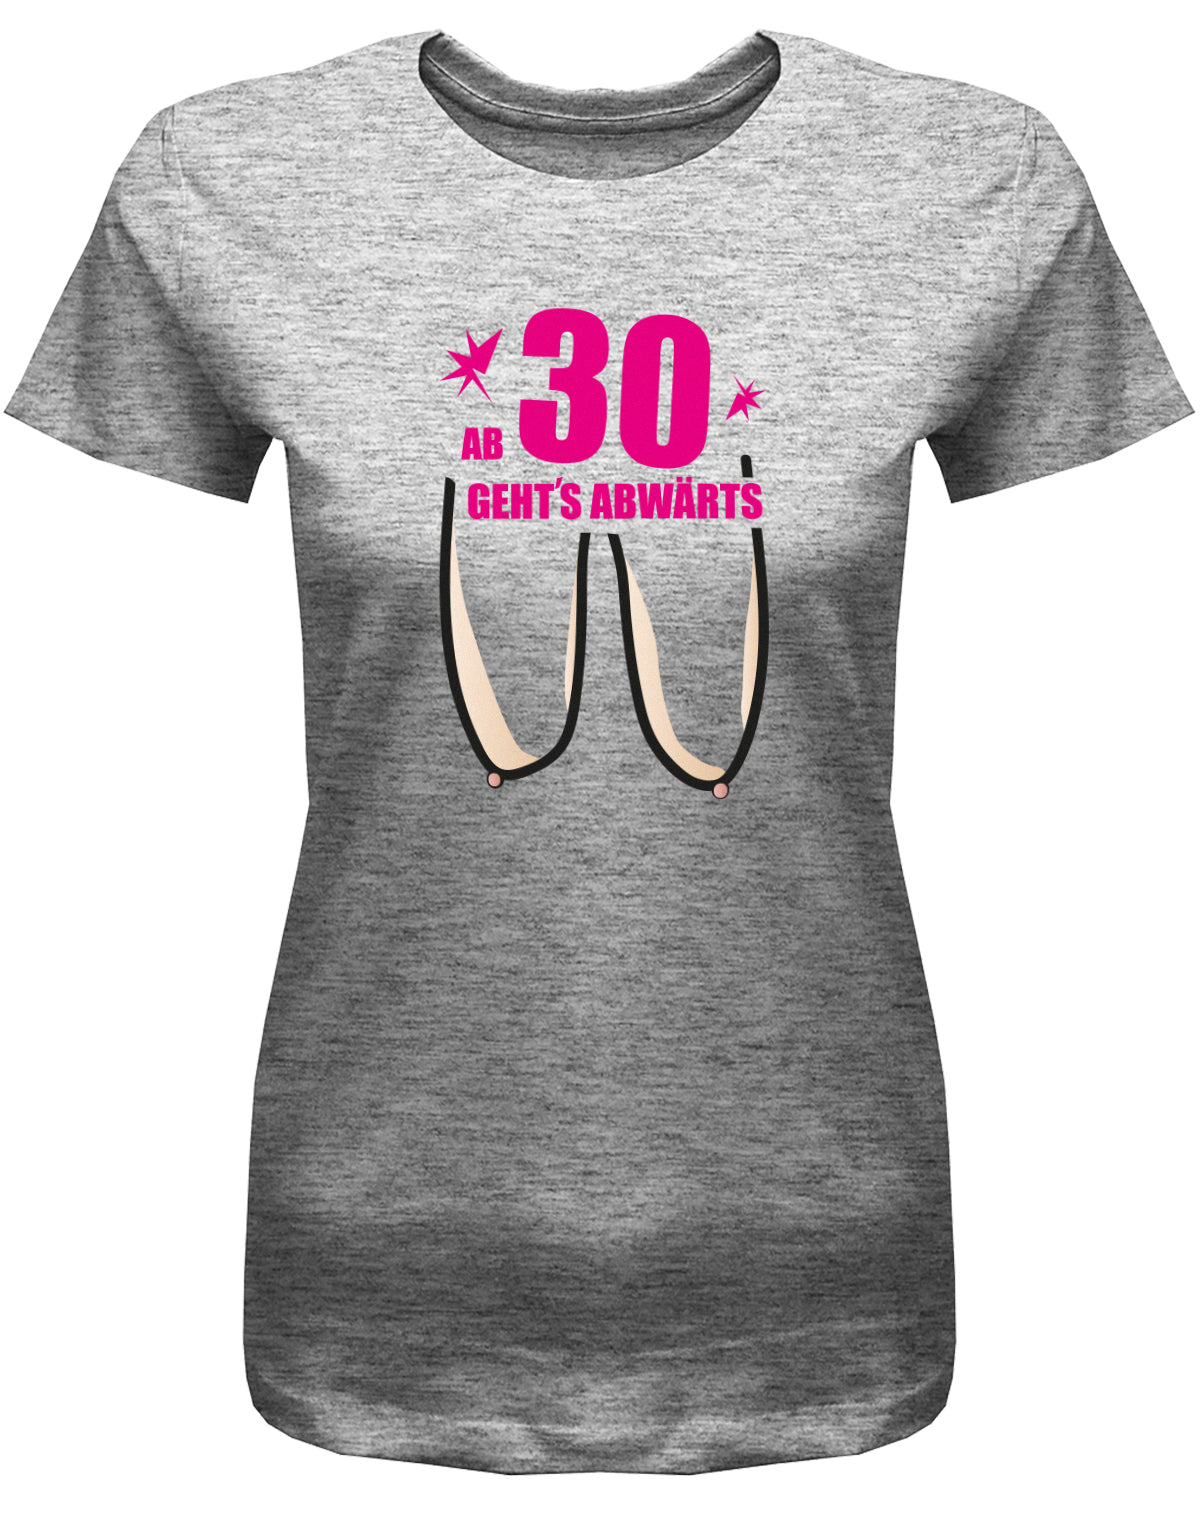 Lustiges T-Shirt zum 30. Geburtstag für die Frau Bedruckt mit: Hänge Brüste ab 30 geht´s abwärts. Geschenk zum 30 geburtstag Frau ✓ 1993 geburtstag Frau ✓ 30 Geburtstag tshirt ✓ shirt geburtstag 30 Grau